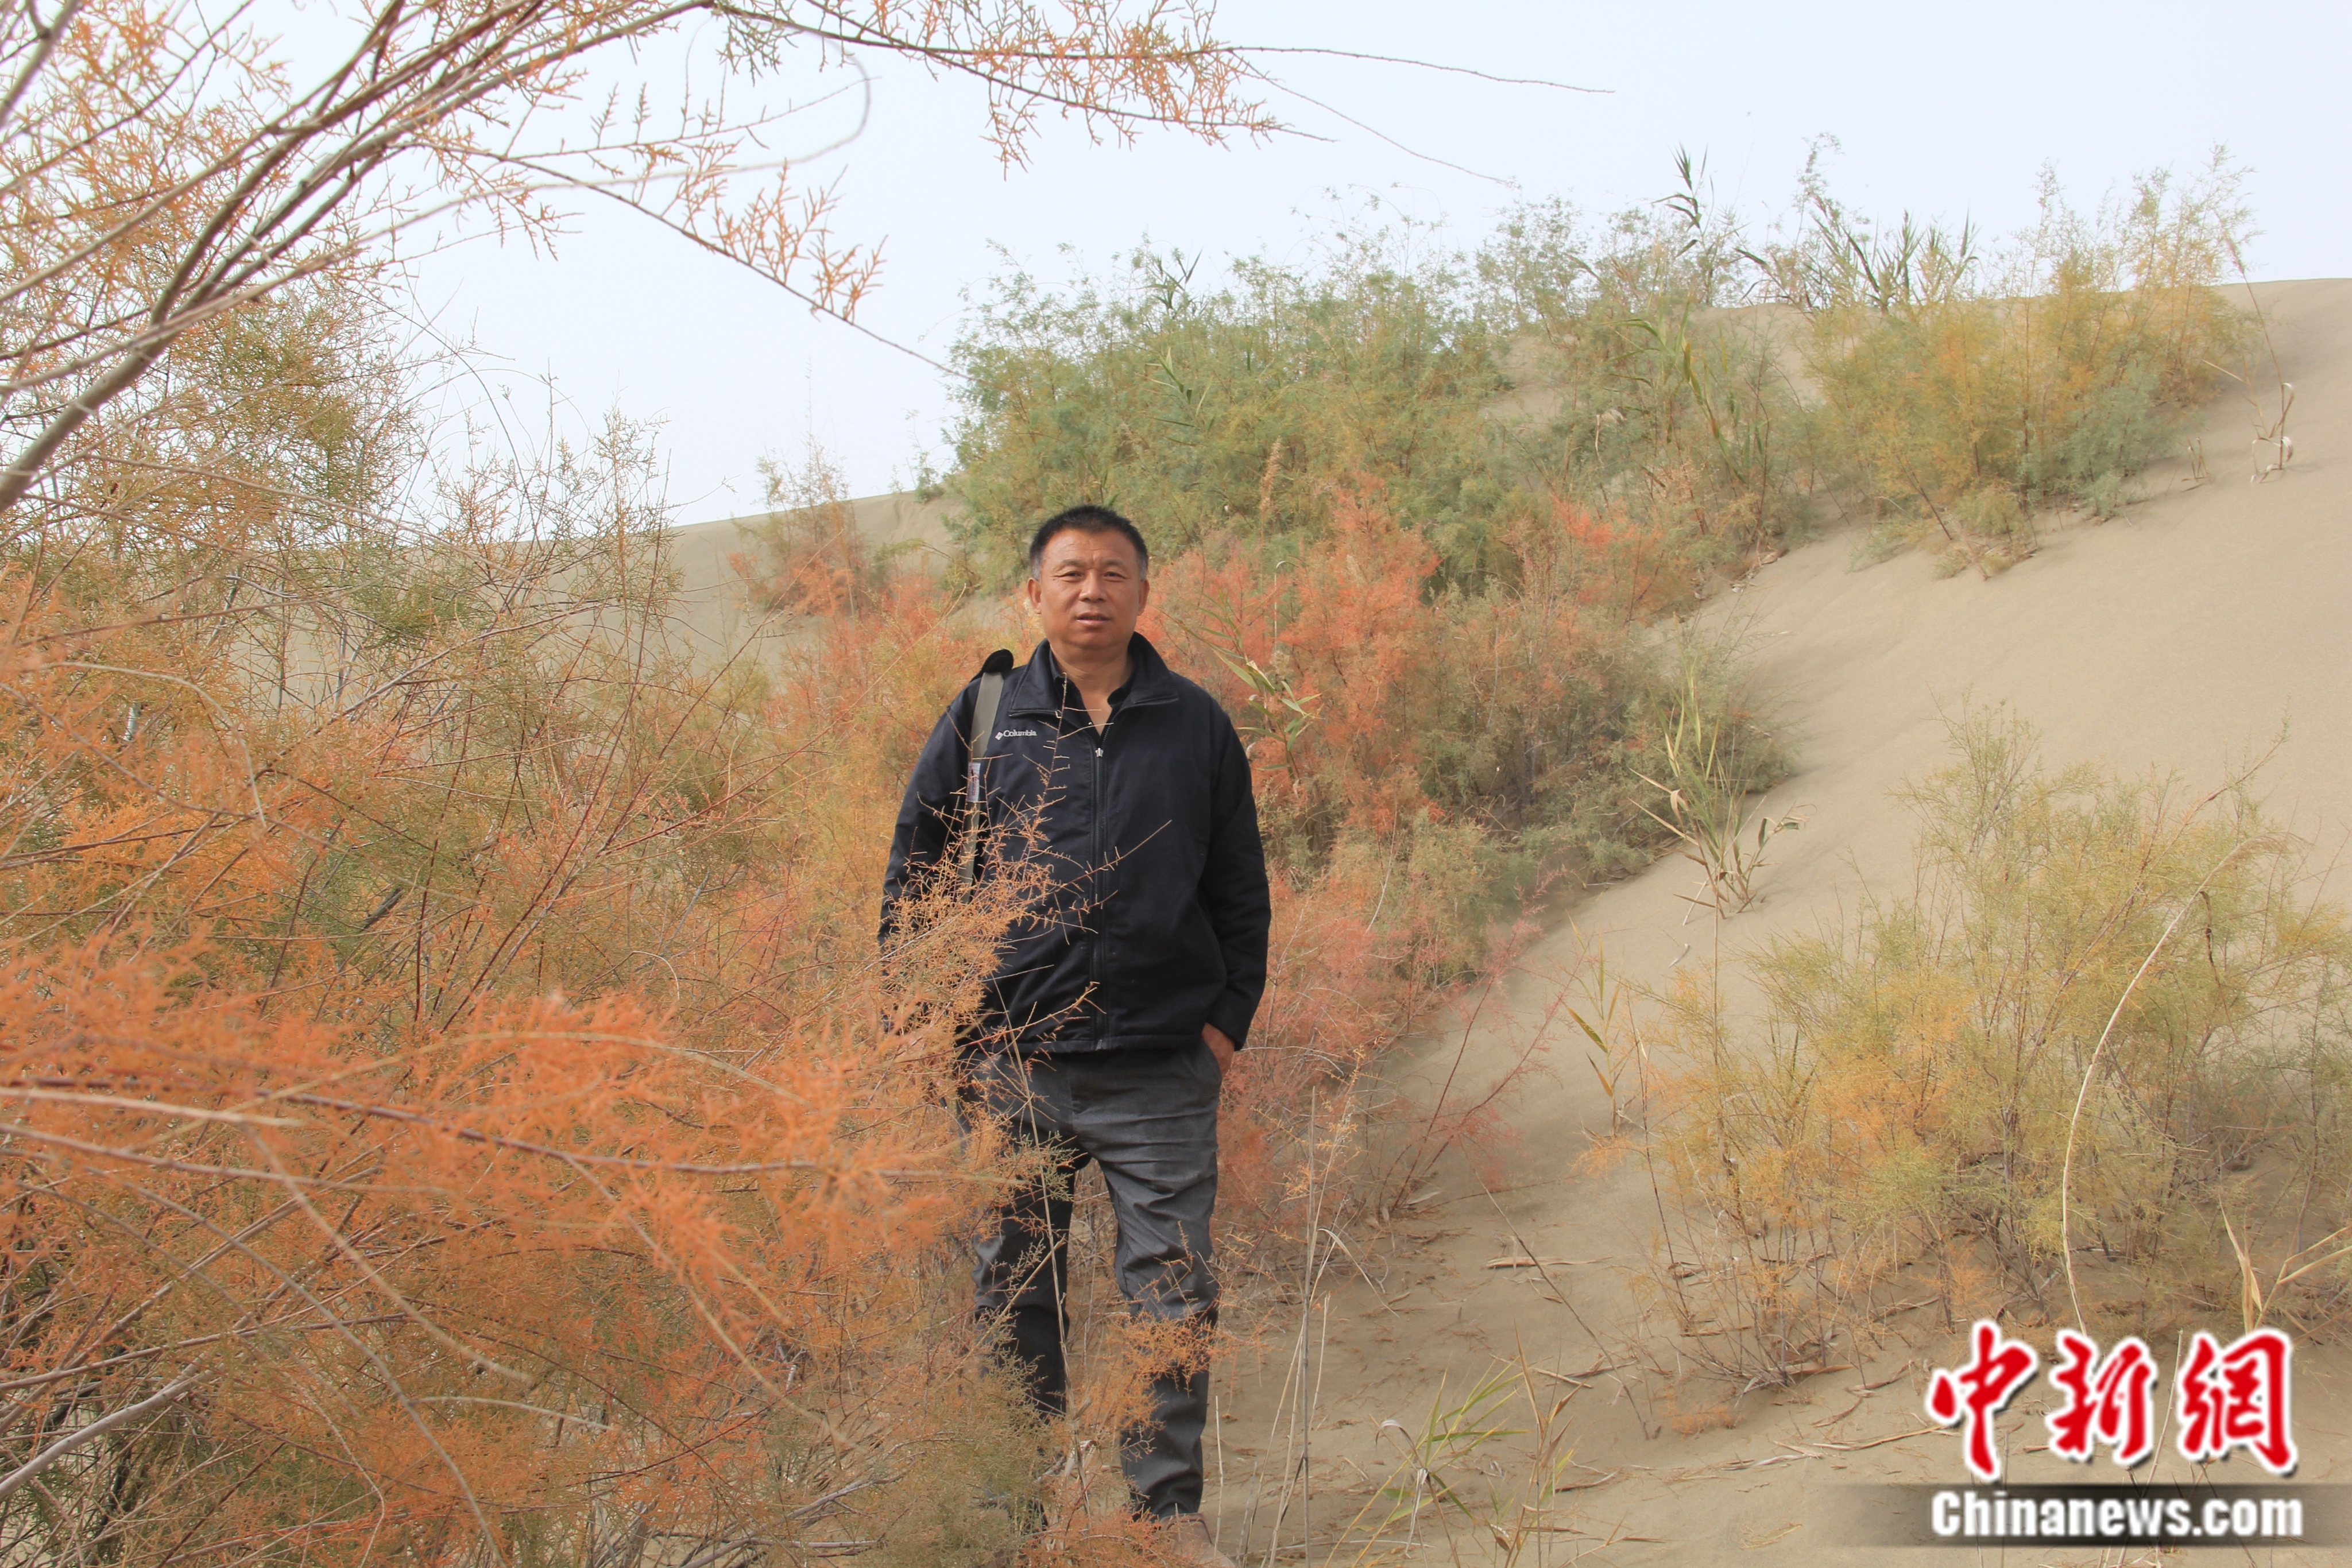 刘康穿行在红柳林中开始一天的工作。受访者供图